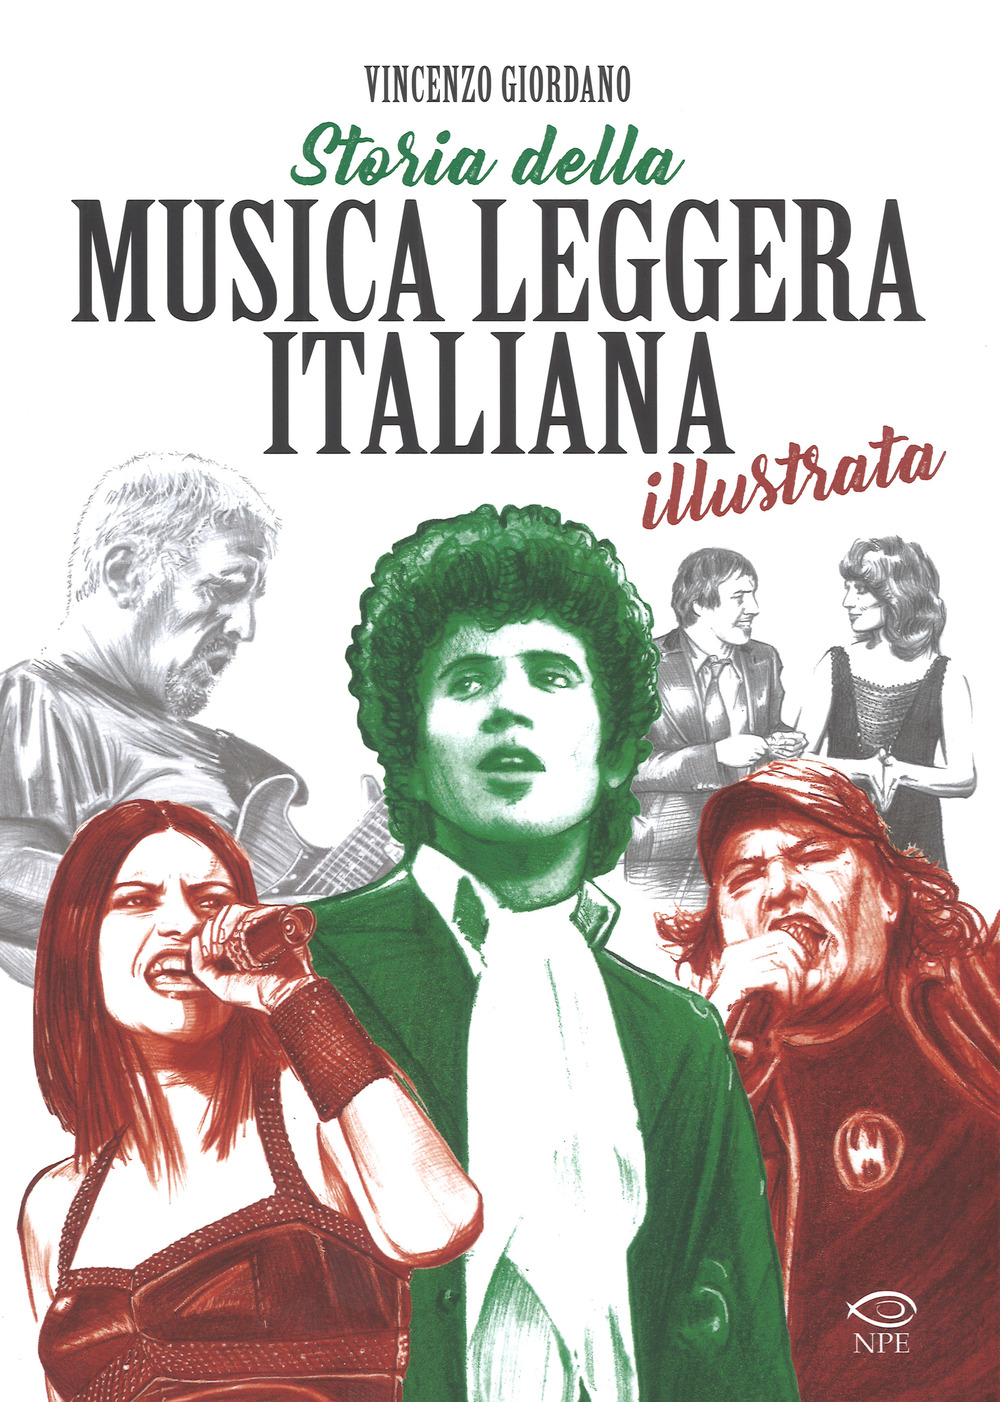 Image of Storia della musica leggera italiana illustrata